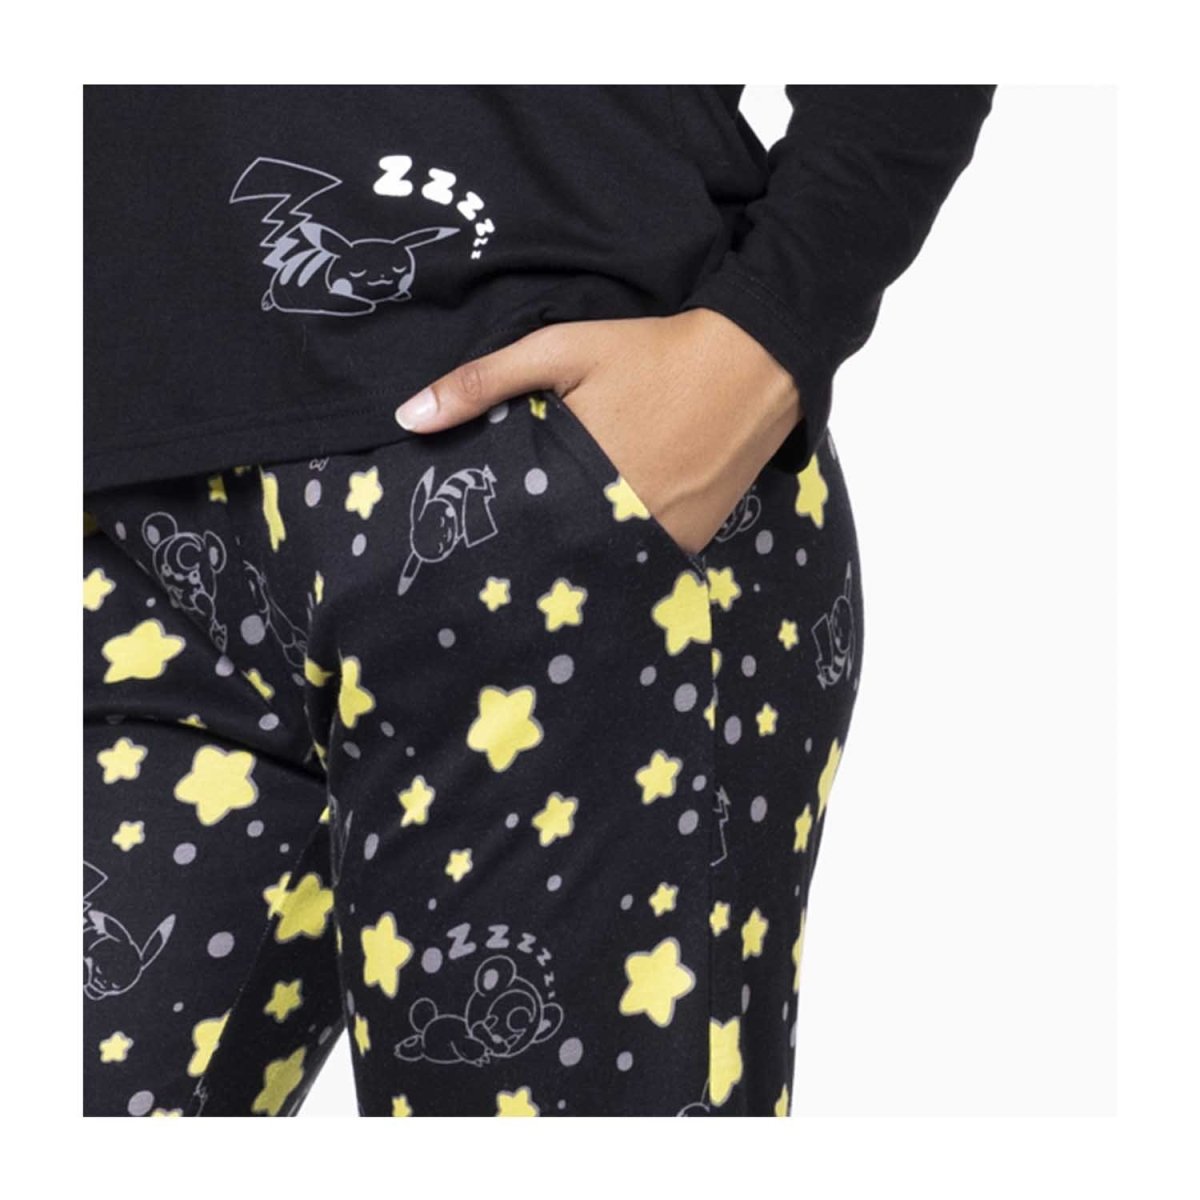 Gap Fit Outlet Color Block Polka Dots Black Active Pants Size XL